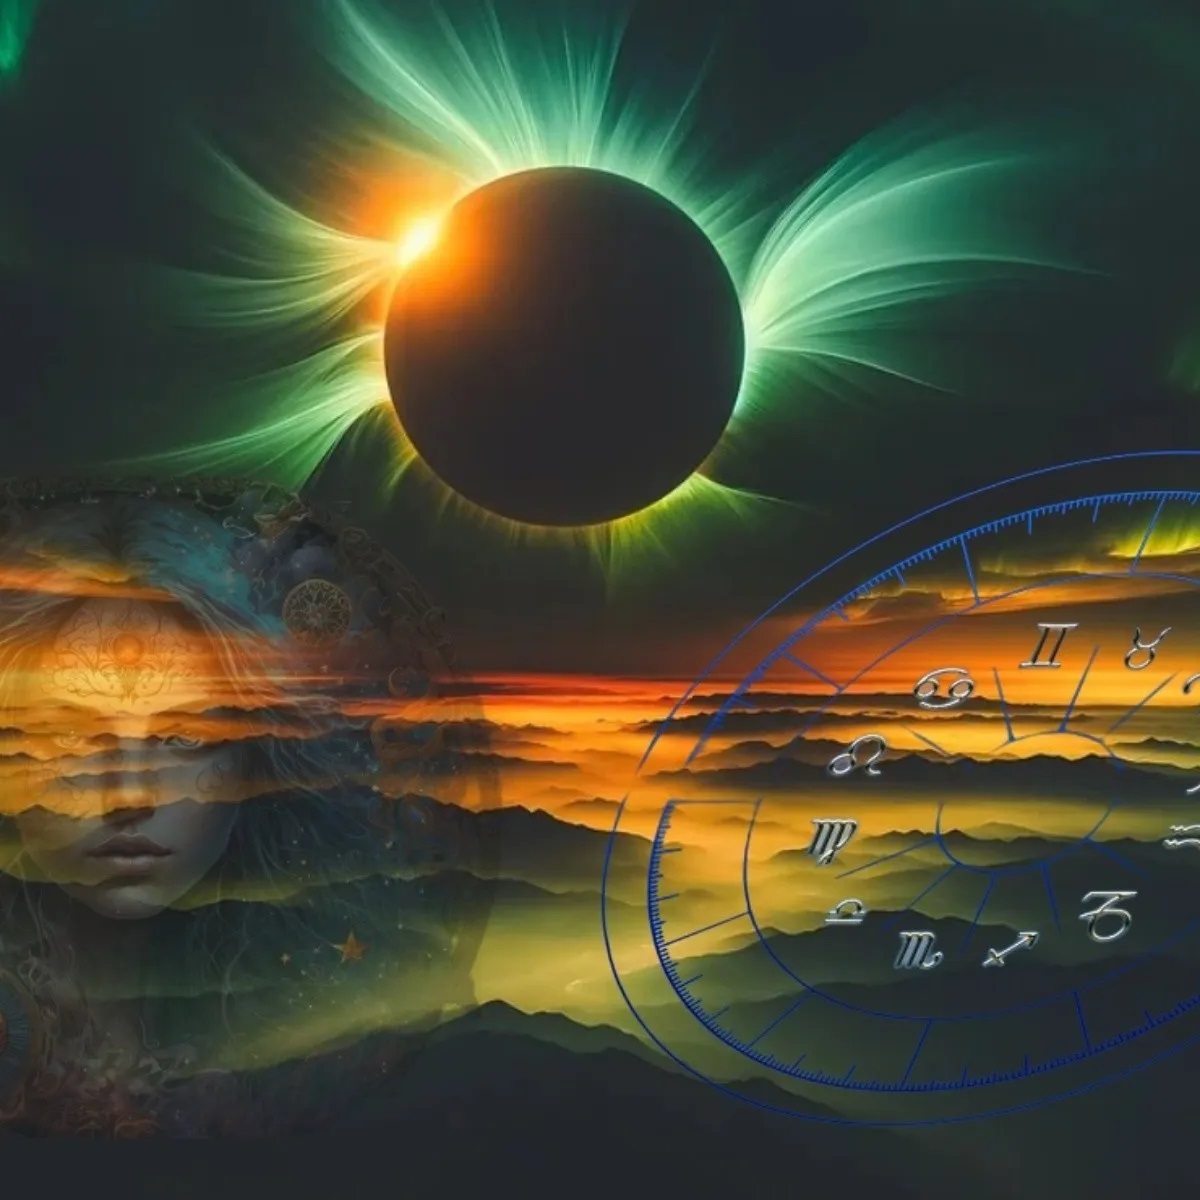 El eclipse de sol en Libra traerá consigo cambios y nuevas etapas.-